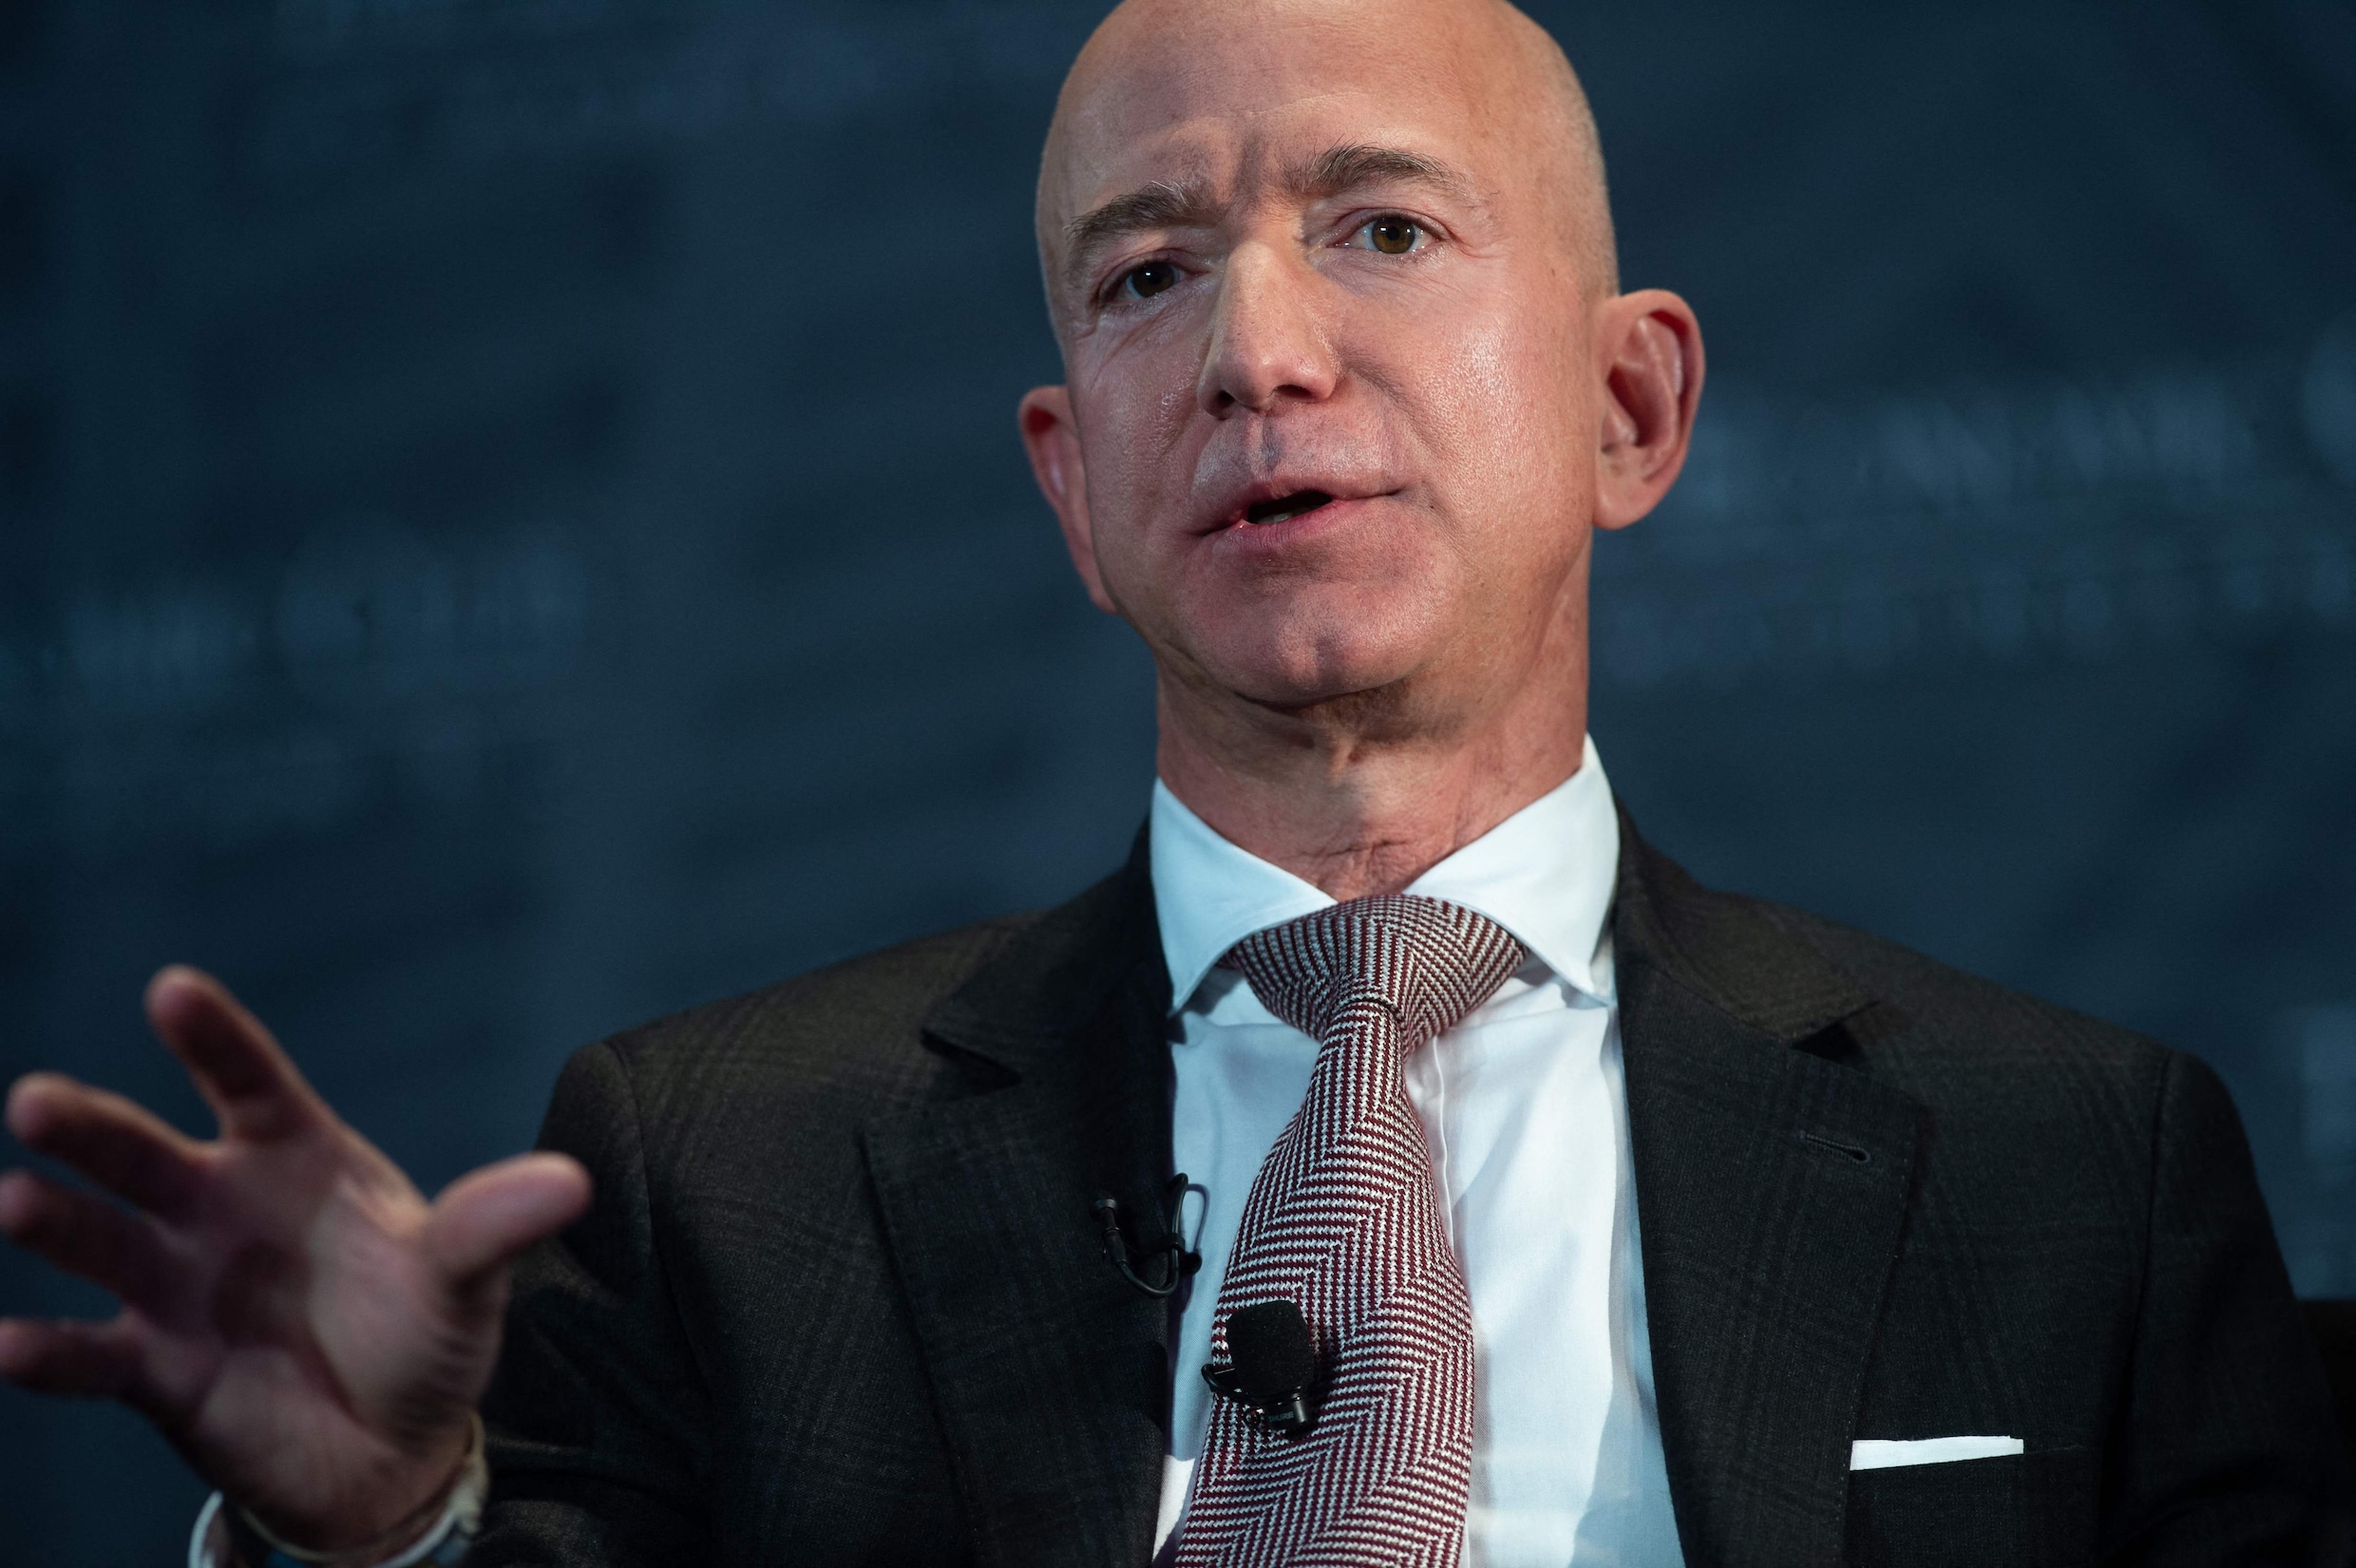 Amazon betaalde de voorbije jaren amper belastingen, maar Jeff Bezos beweert nu voorstander te zijn van belastingverhoging